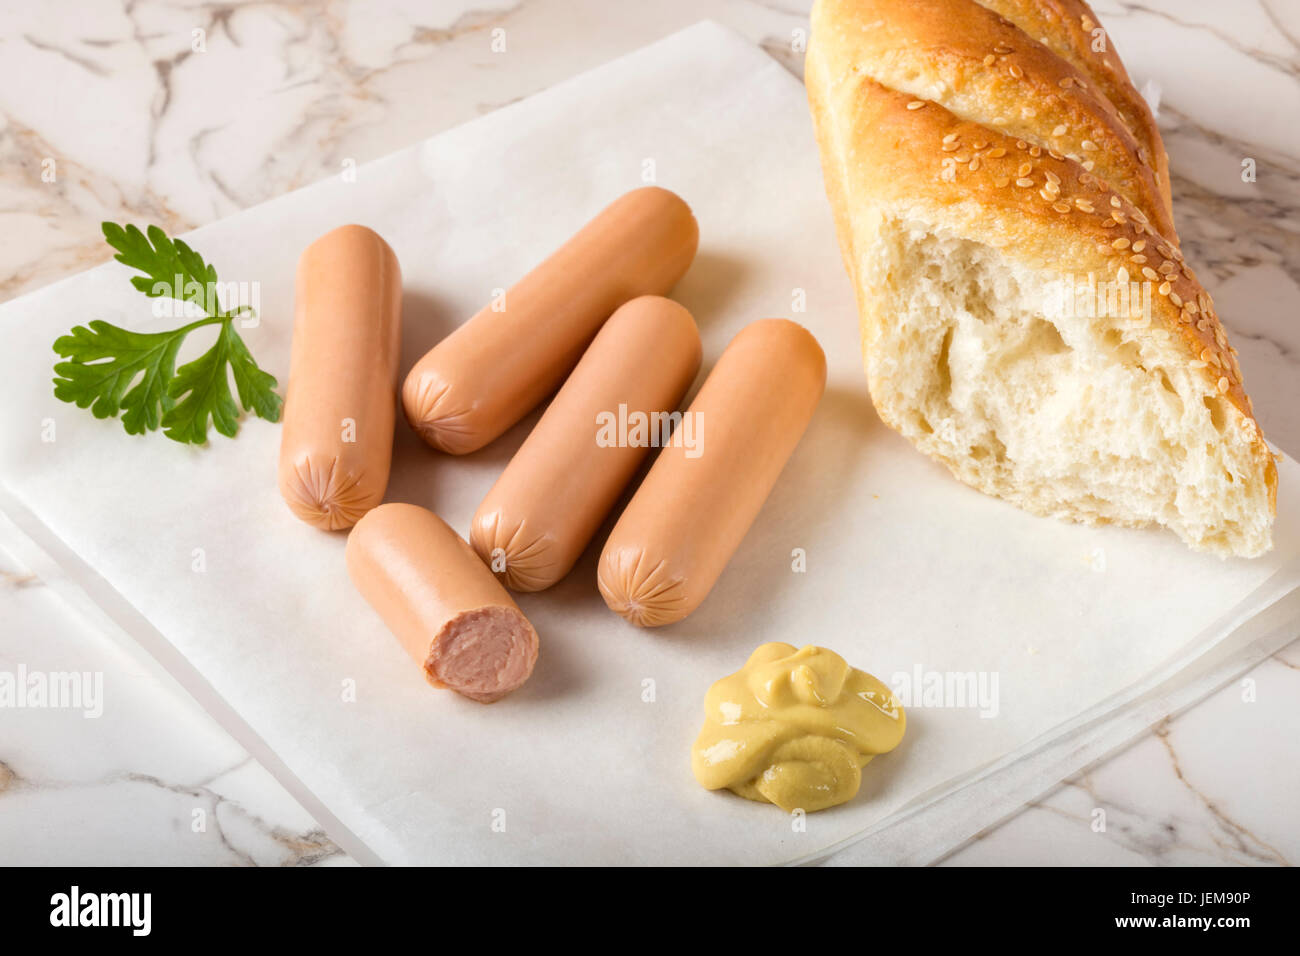 Saucisses (Frankfurter) sur table rustique avec du pain et de la moutarde Banque D'Images